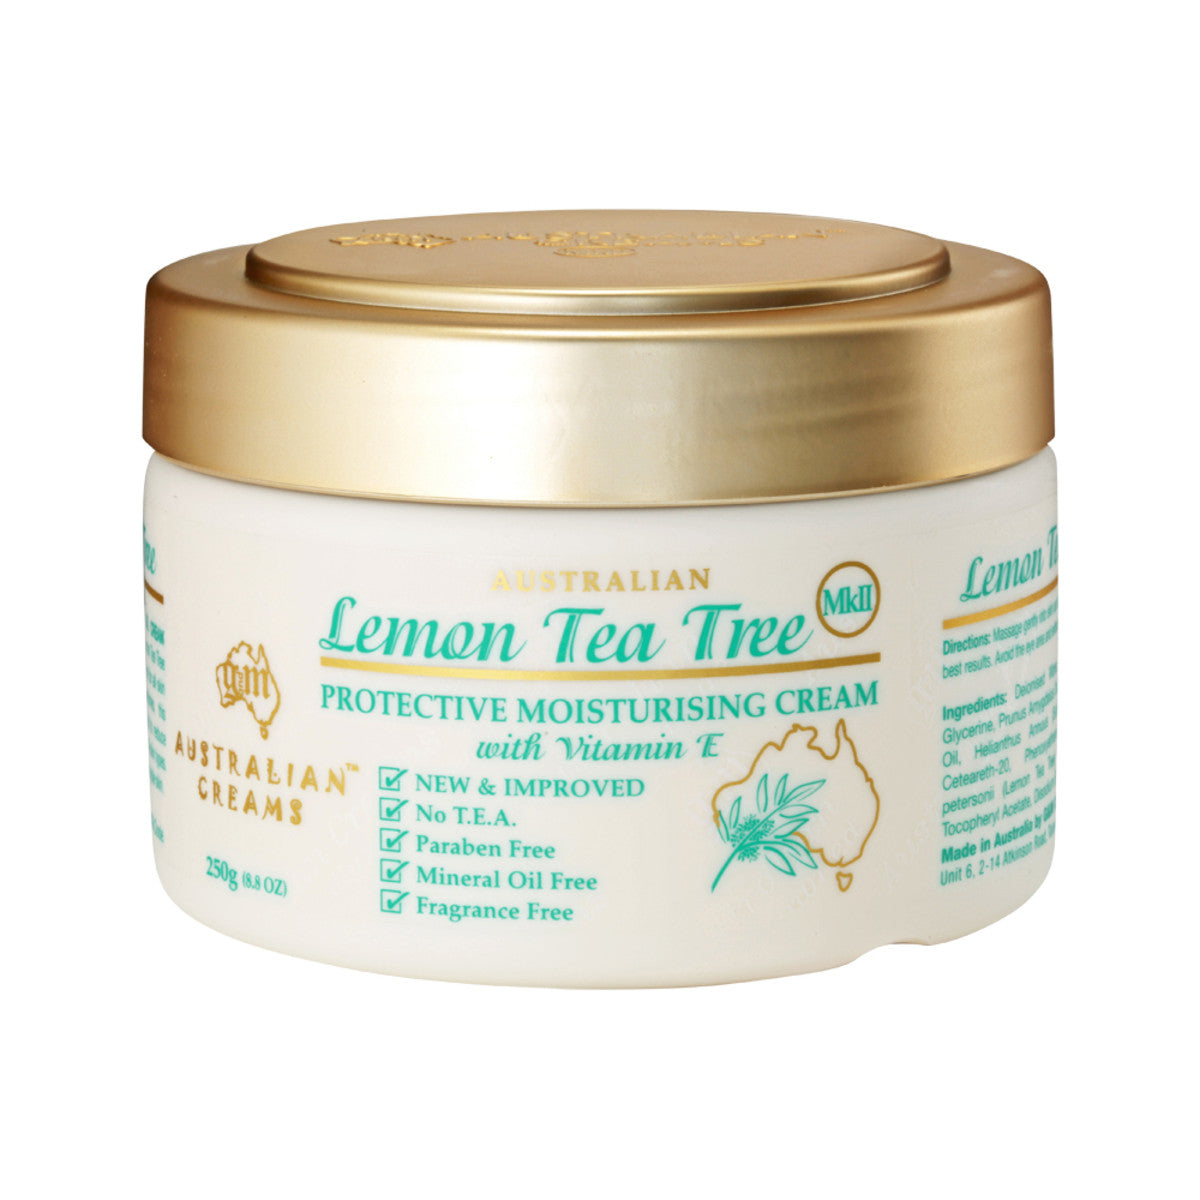 Australian Creams - MkII Cream Lemon Tea Tree